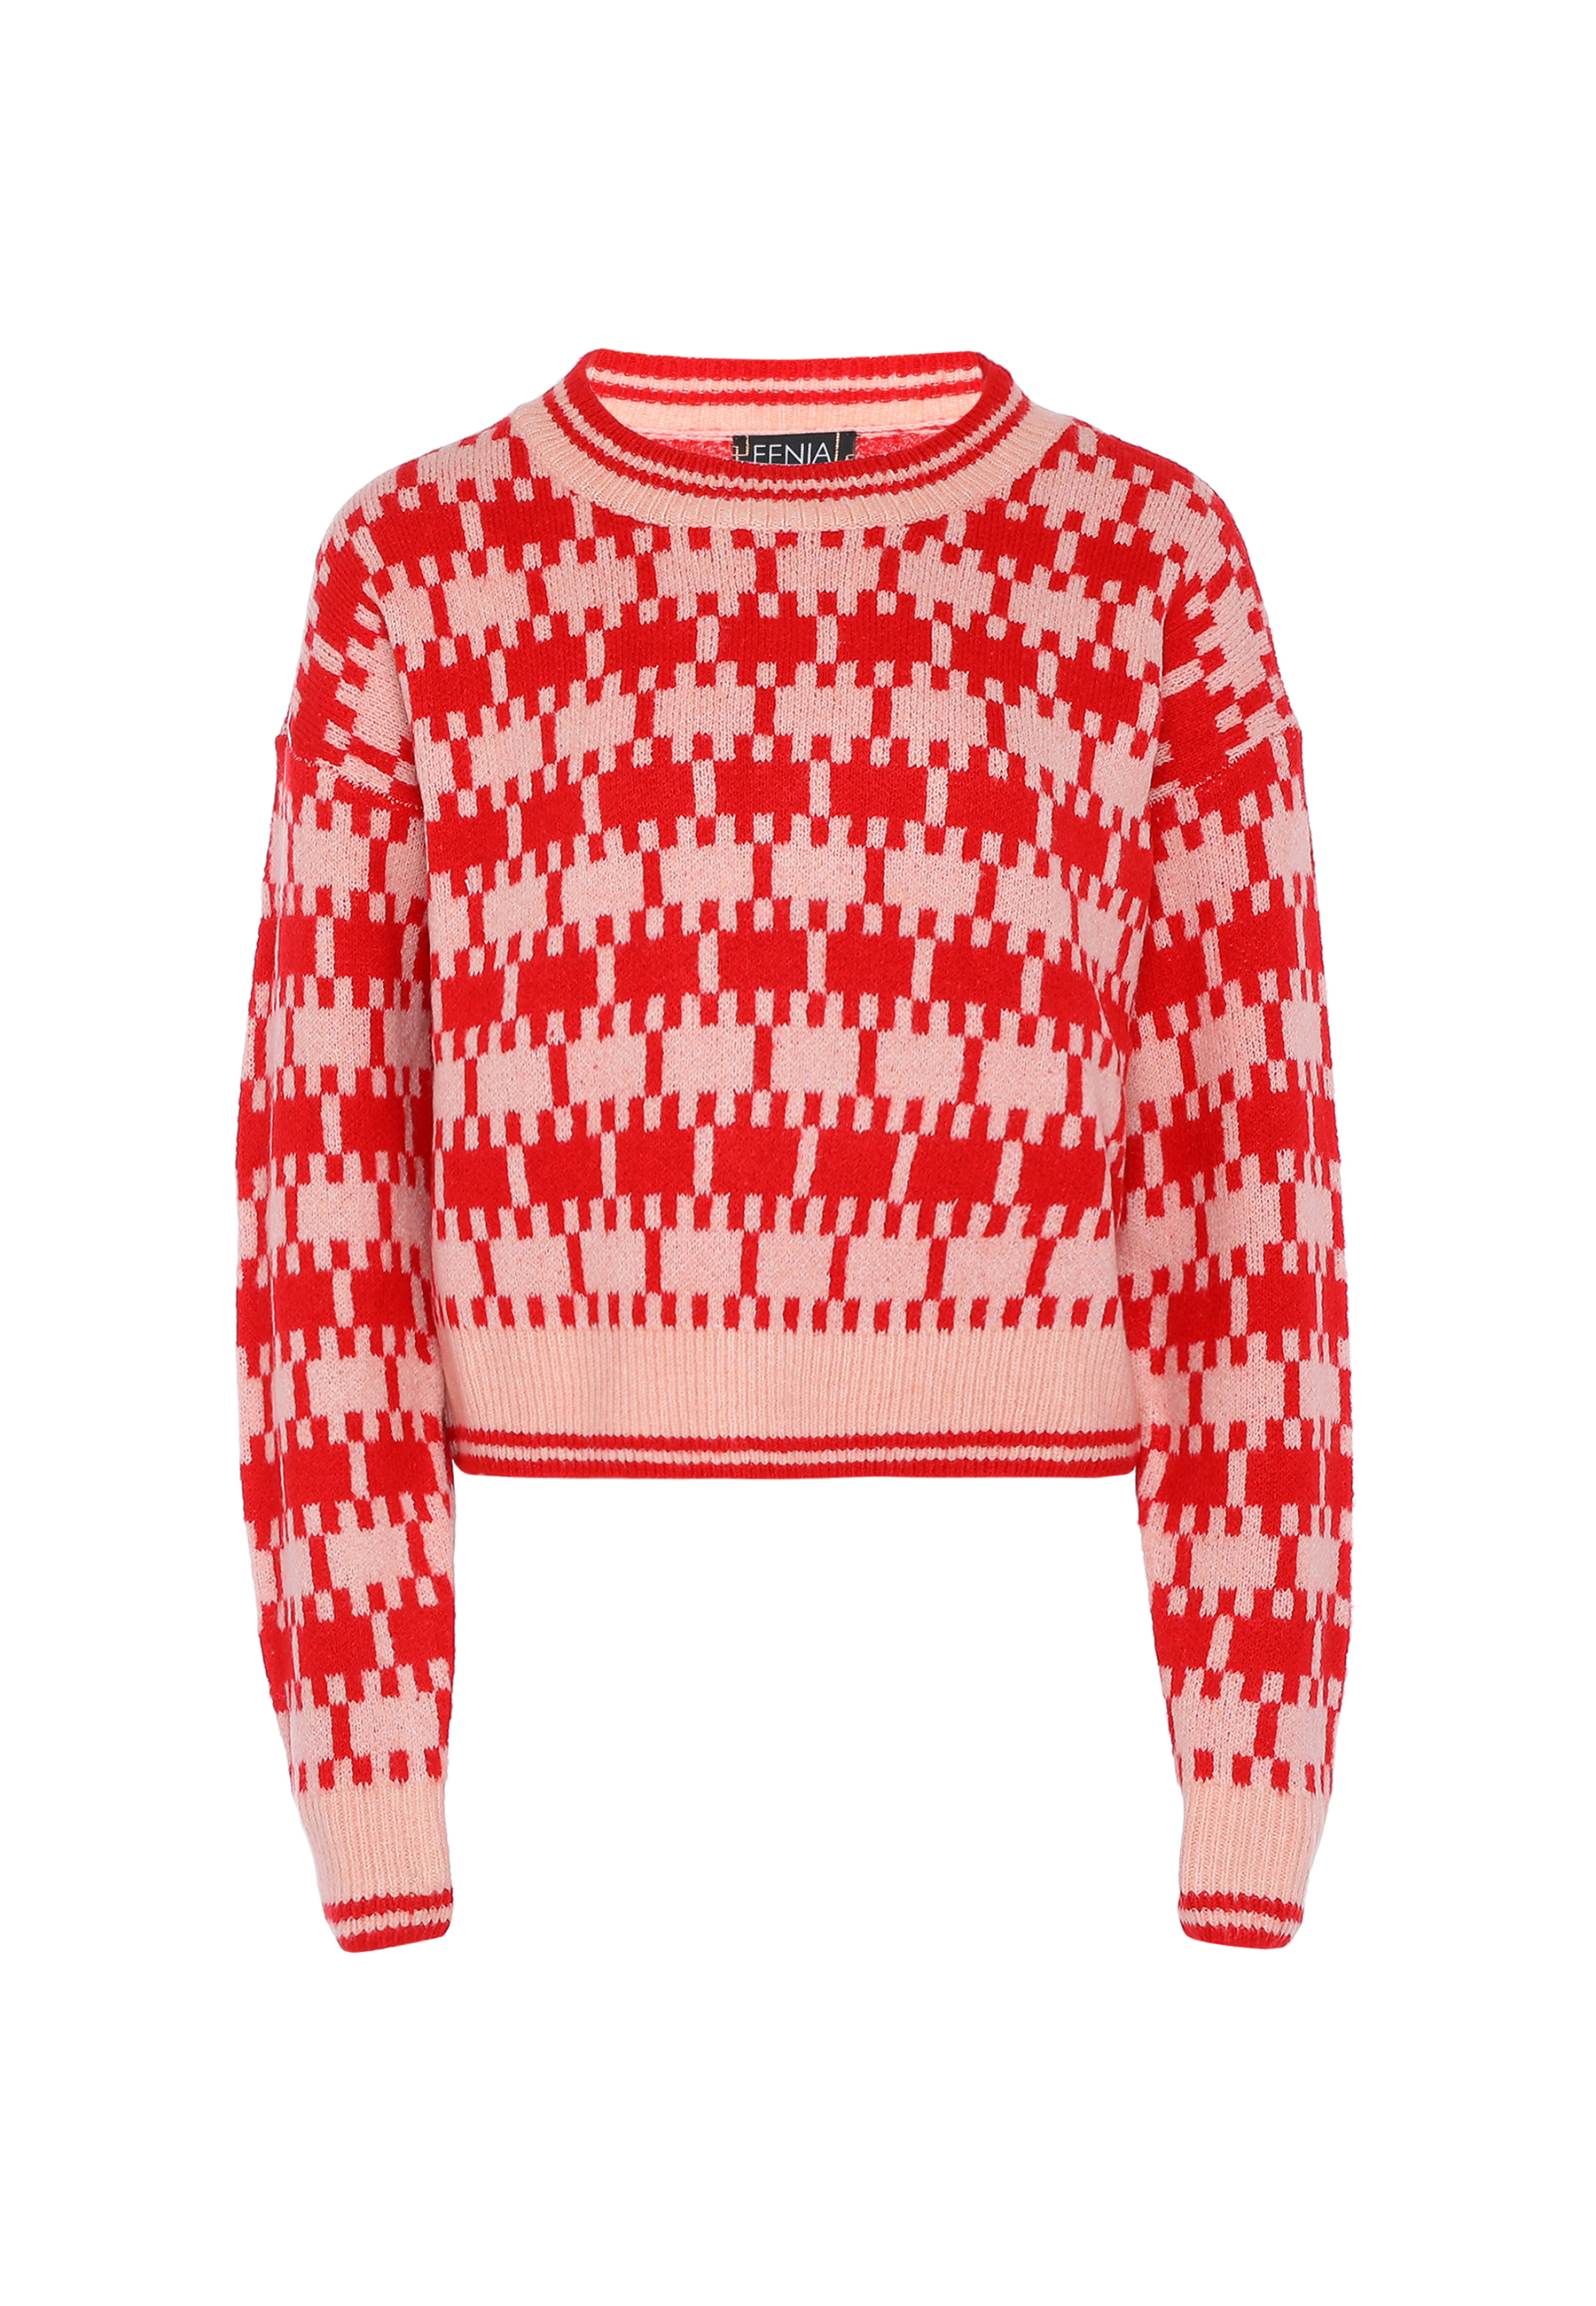 Свитер FENIA Sweater, красный свитер fenia sweater белый